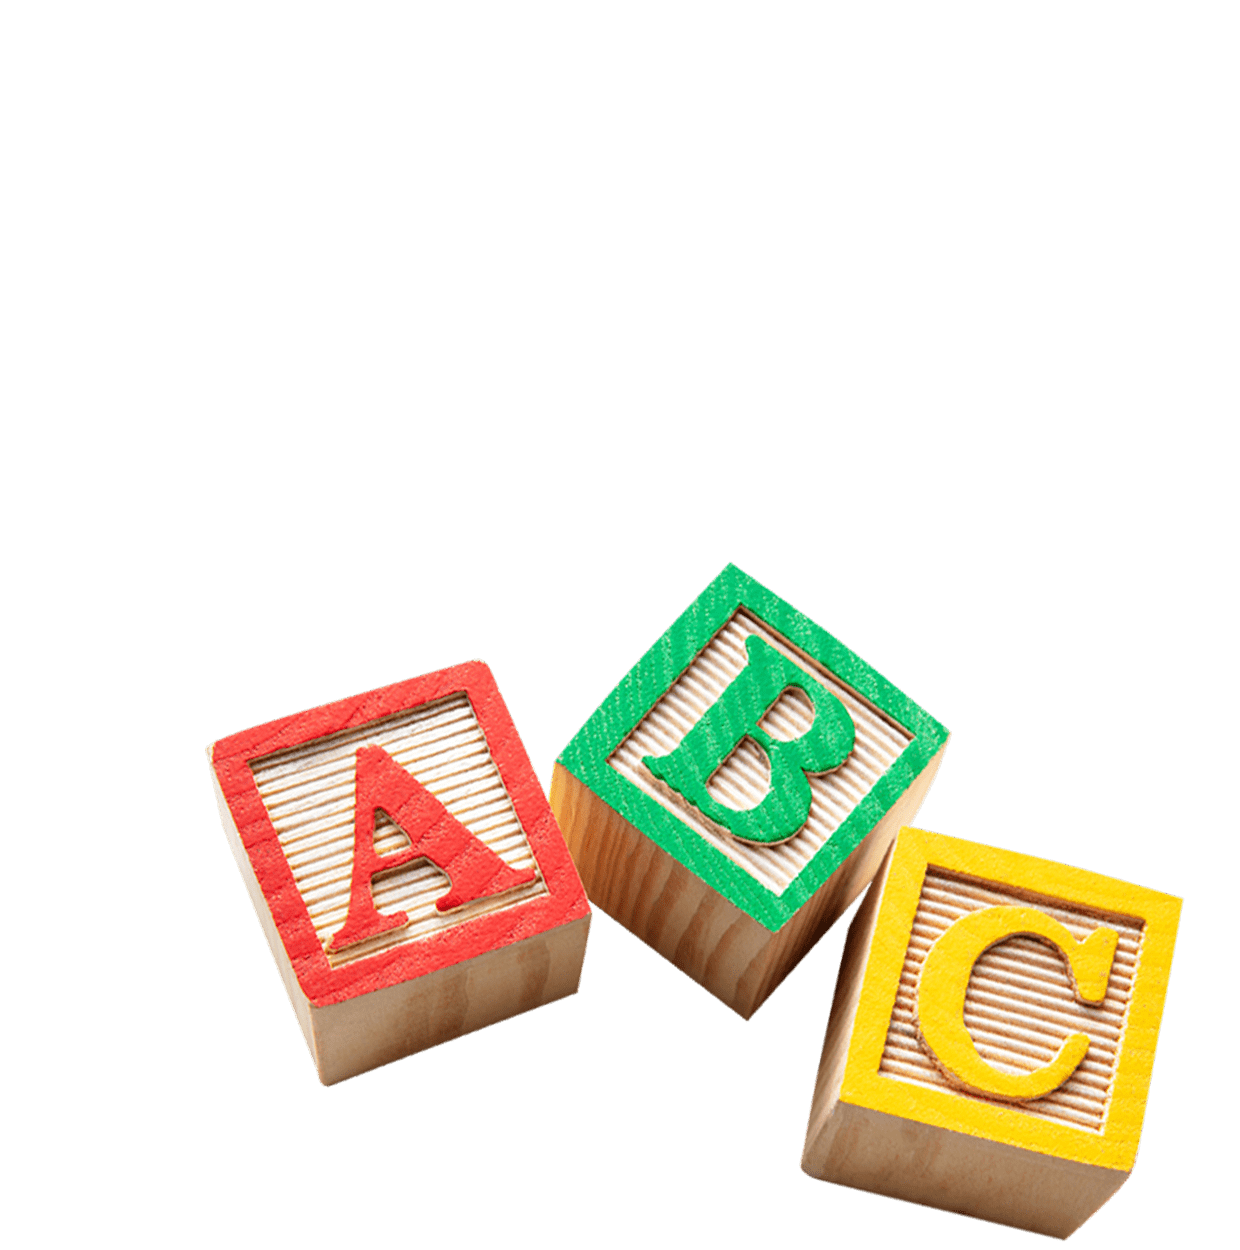 letter blocks